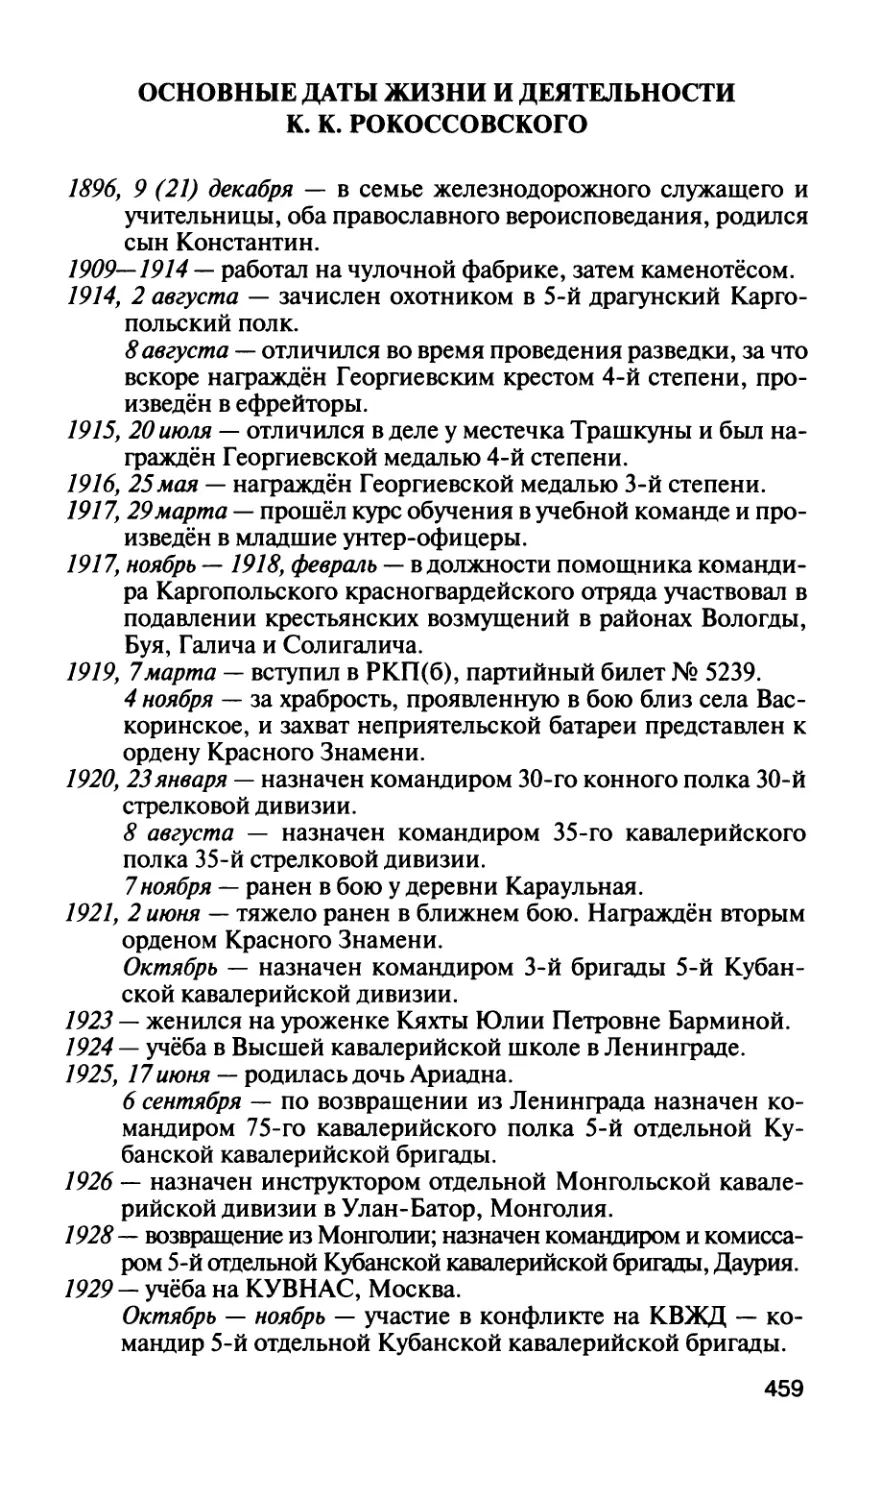 Основные даты жизни и деятельности К. К. Рокоссовского